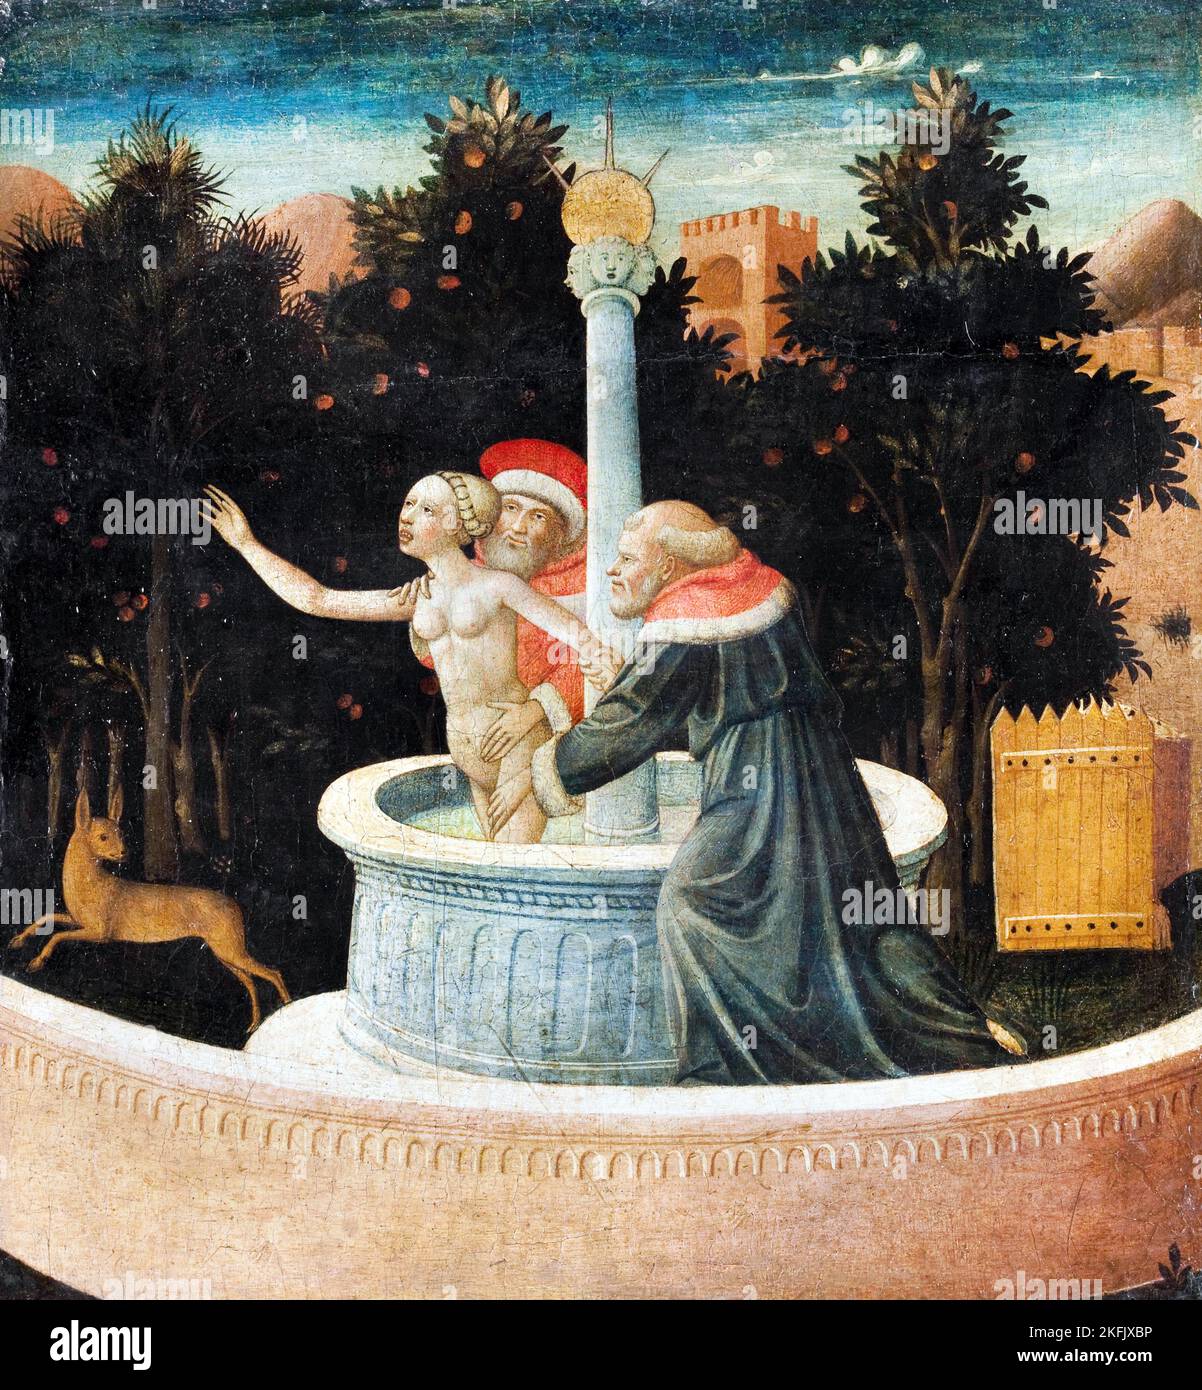 Domenico di Michelino; Susanna et les Aînés; Circa 1460-1475; huile sur panneau; Musée d'art Zimmerli à l'Université Rutgers, États-Unis. Banque D'Images